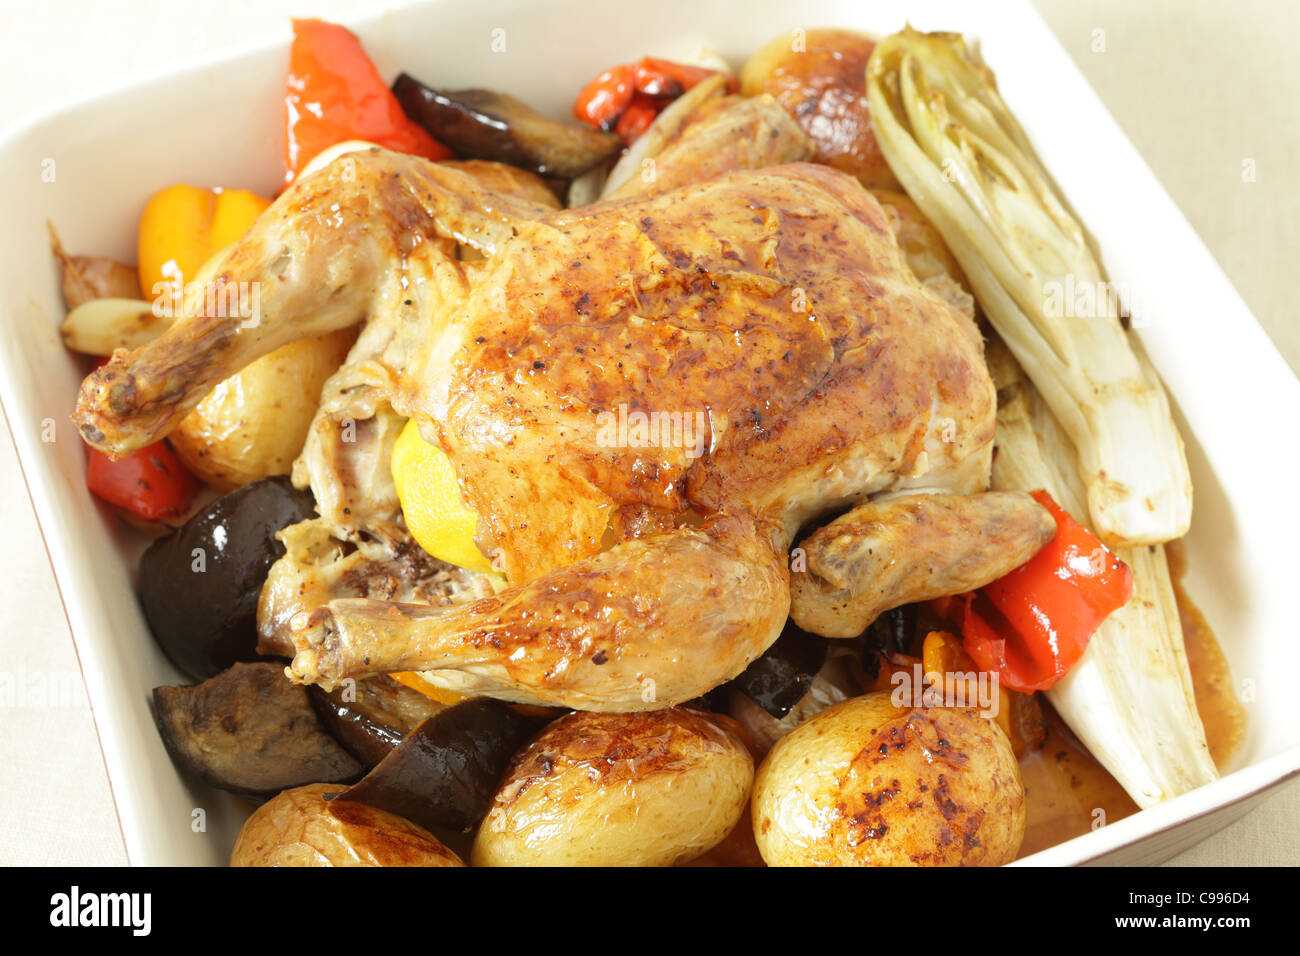 Gebratenes Huhn in einer Schüssel auf einem Bett von Ofen gebraten Gemüse einschließlich Kartoffeln, Paprika, Chicorée, Auberginen und Knoblauch. Stockfoto